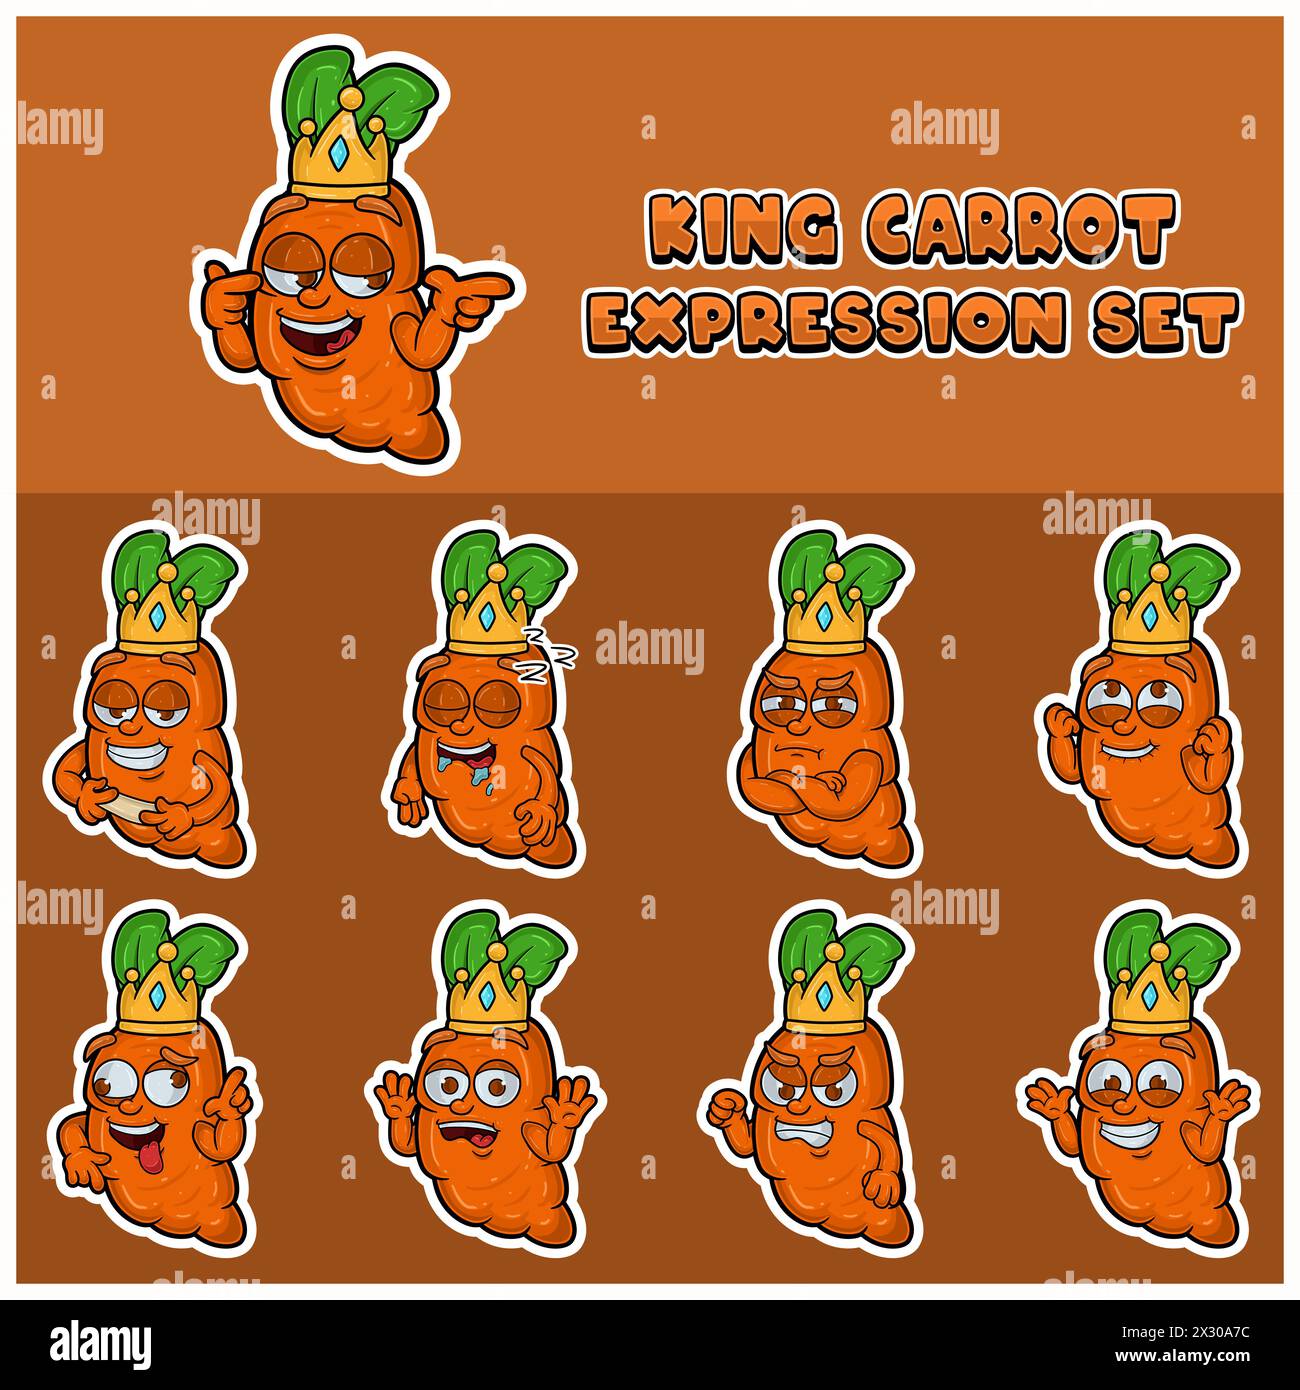 Cartoon Maskottchen der Karottenfigur mit König und Ausdruck Set. Vektor Und Illustration Stock Vektor